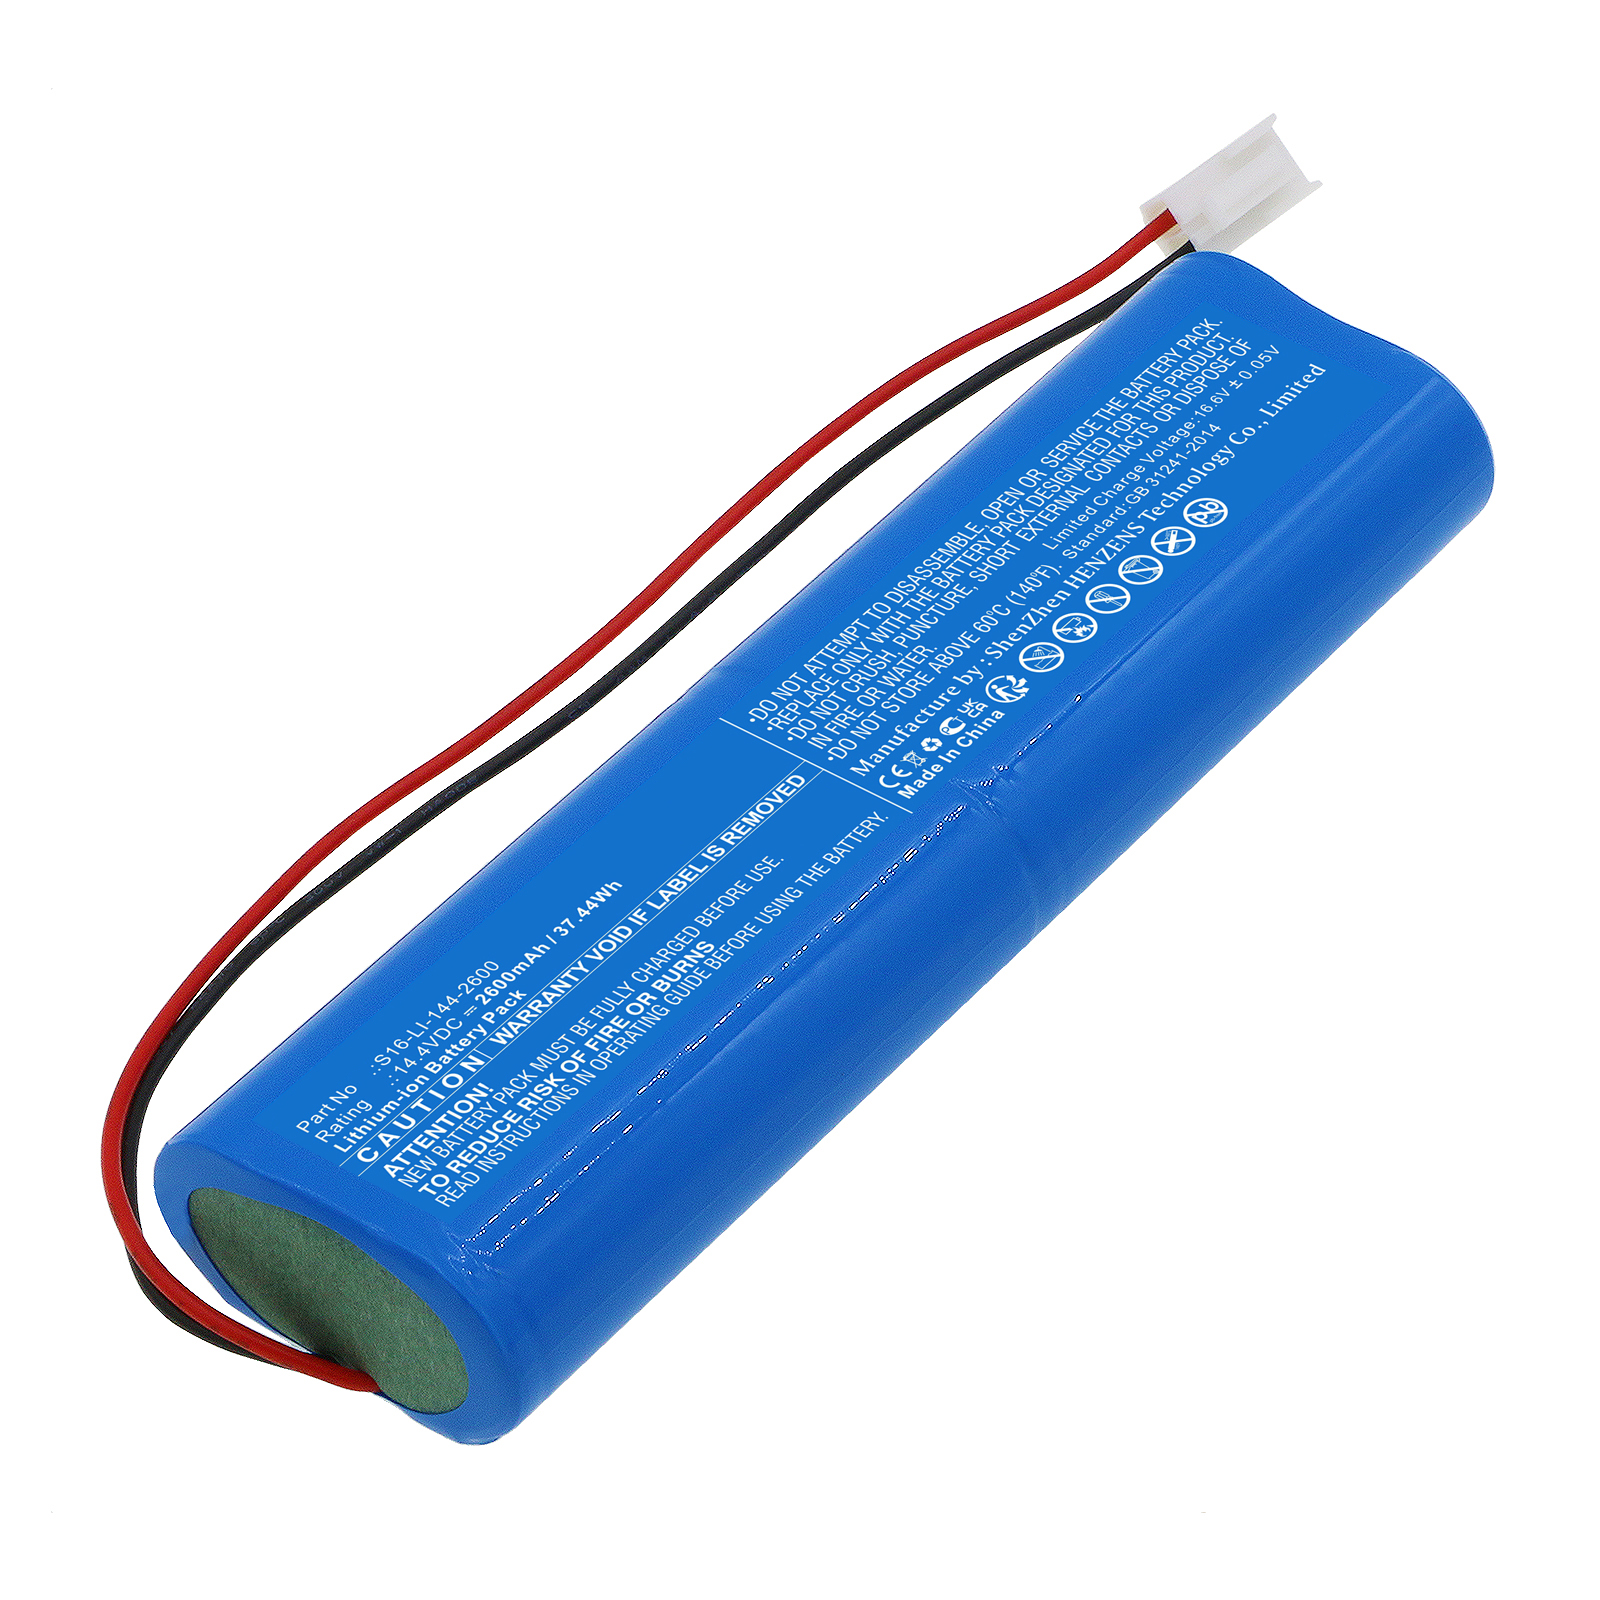 Synergy Digital Vacuum Cleaner Battery, Compatible with Marklive S16-LI-144-2600 Vacuum Cleaner Battery (Li-ion, 14.4V, 2600mAh)